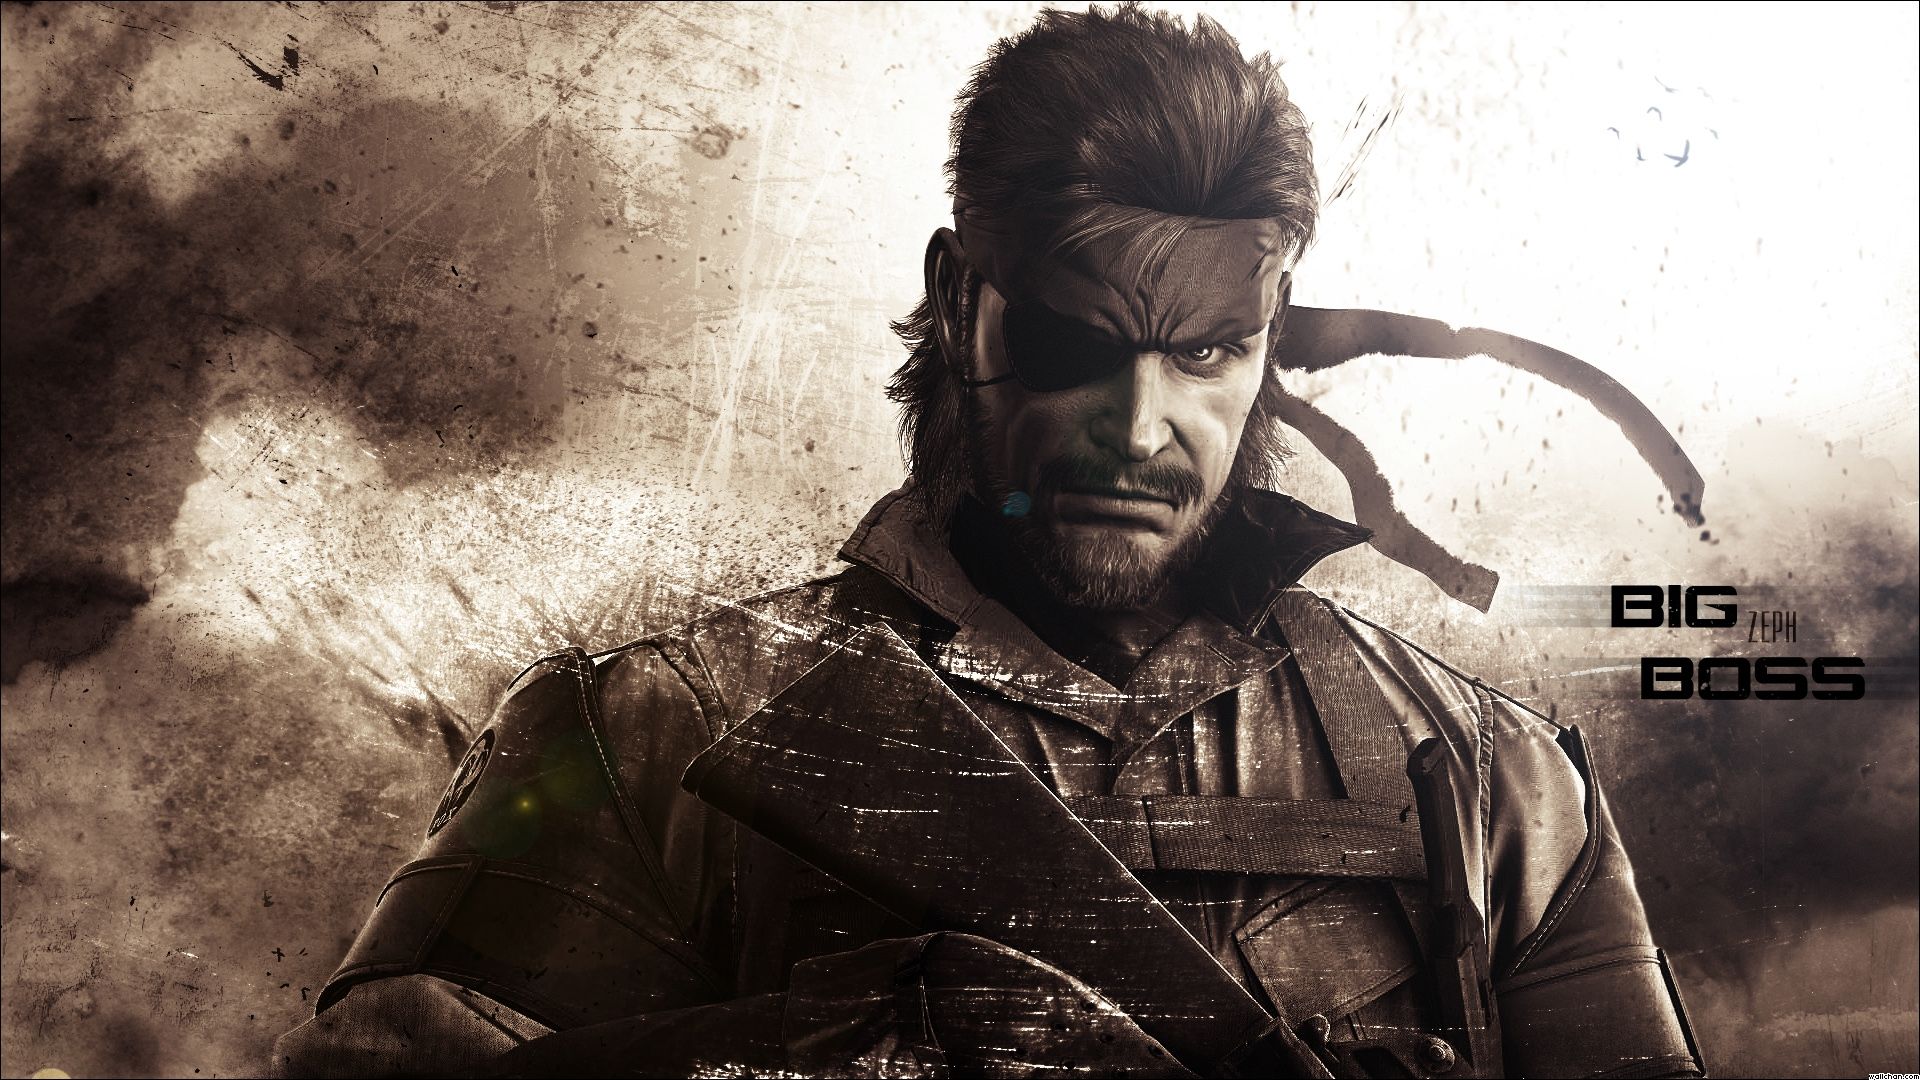 Metal Gear Solid HD Wallpaper 1920x1080 ID27061